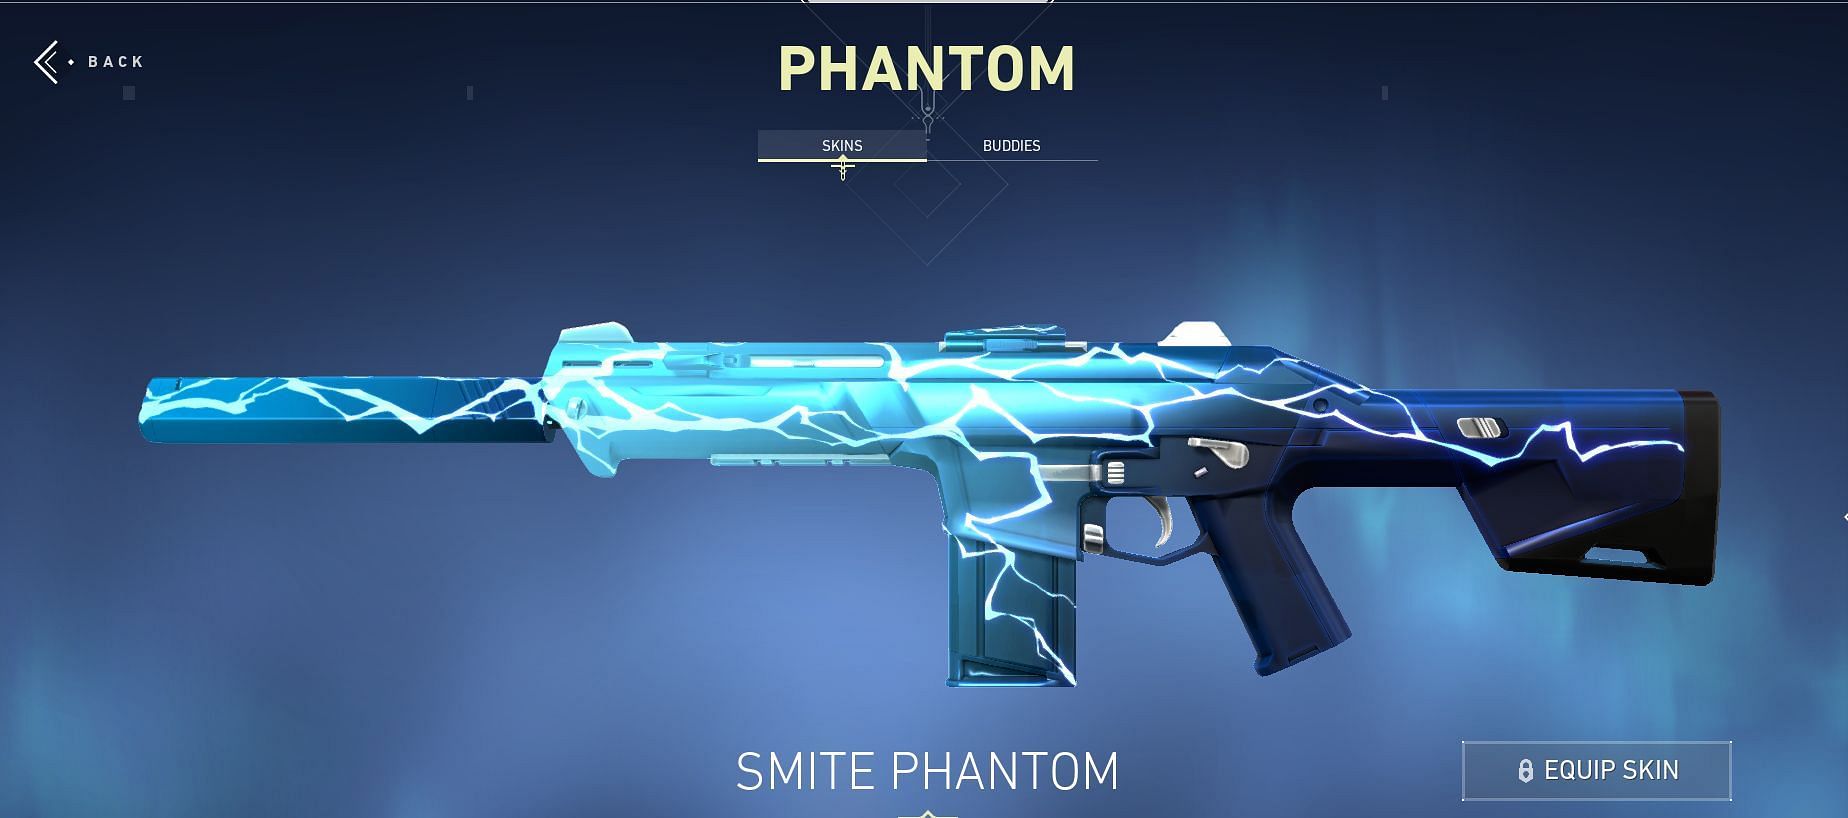 Smite Phantom (Image via Riot Games)